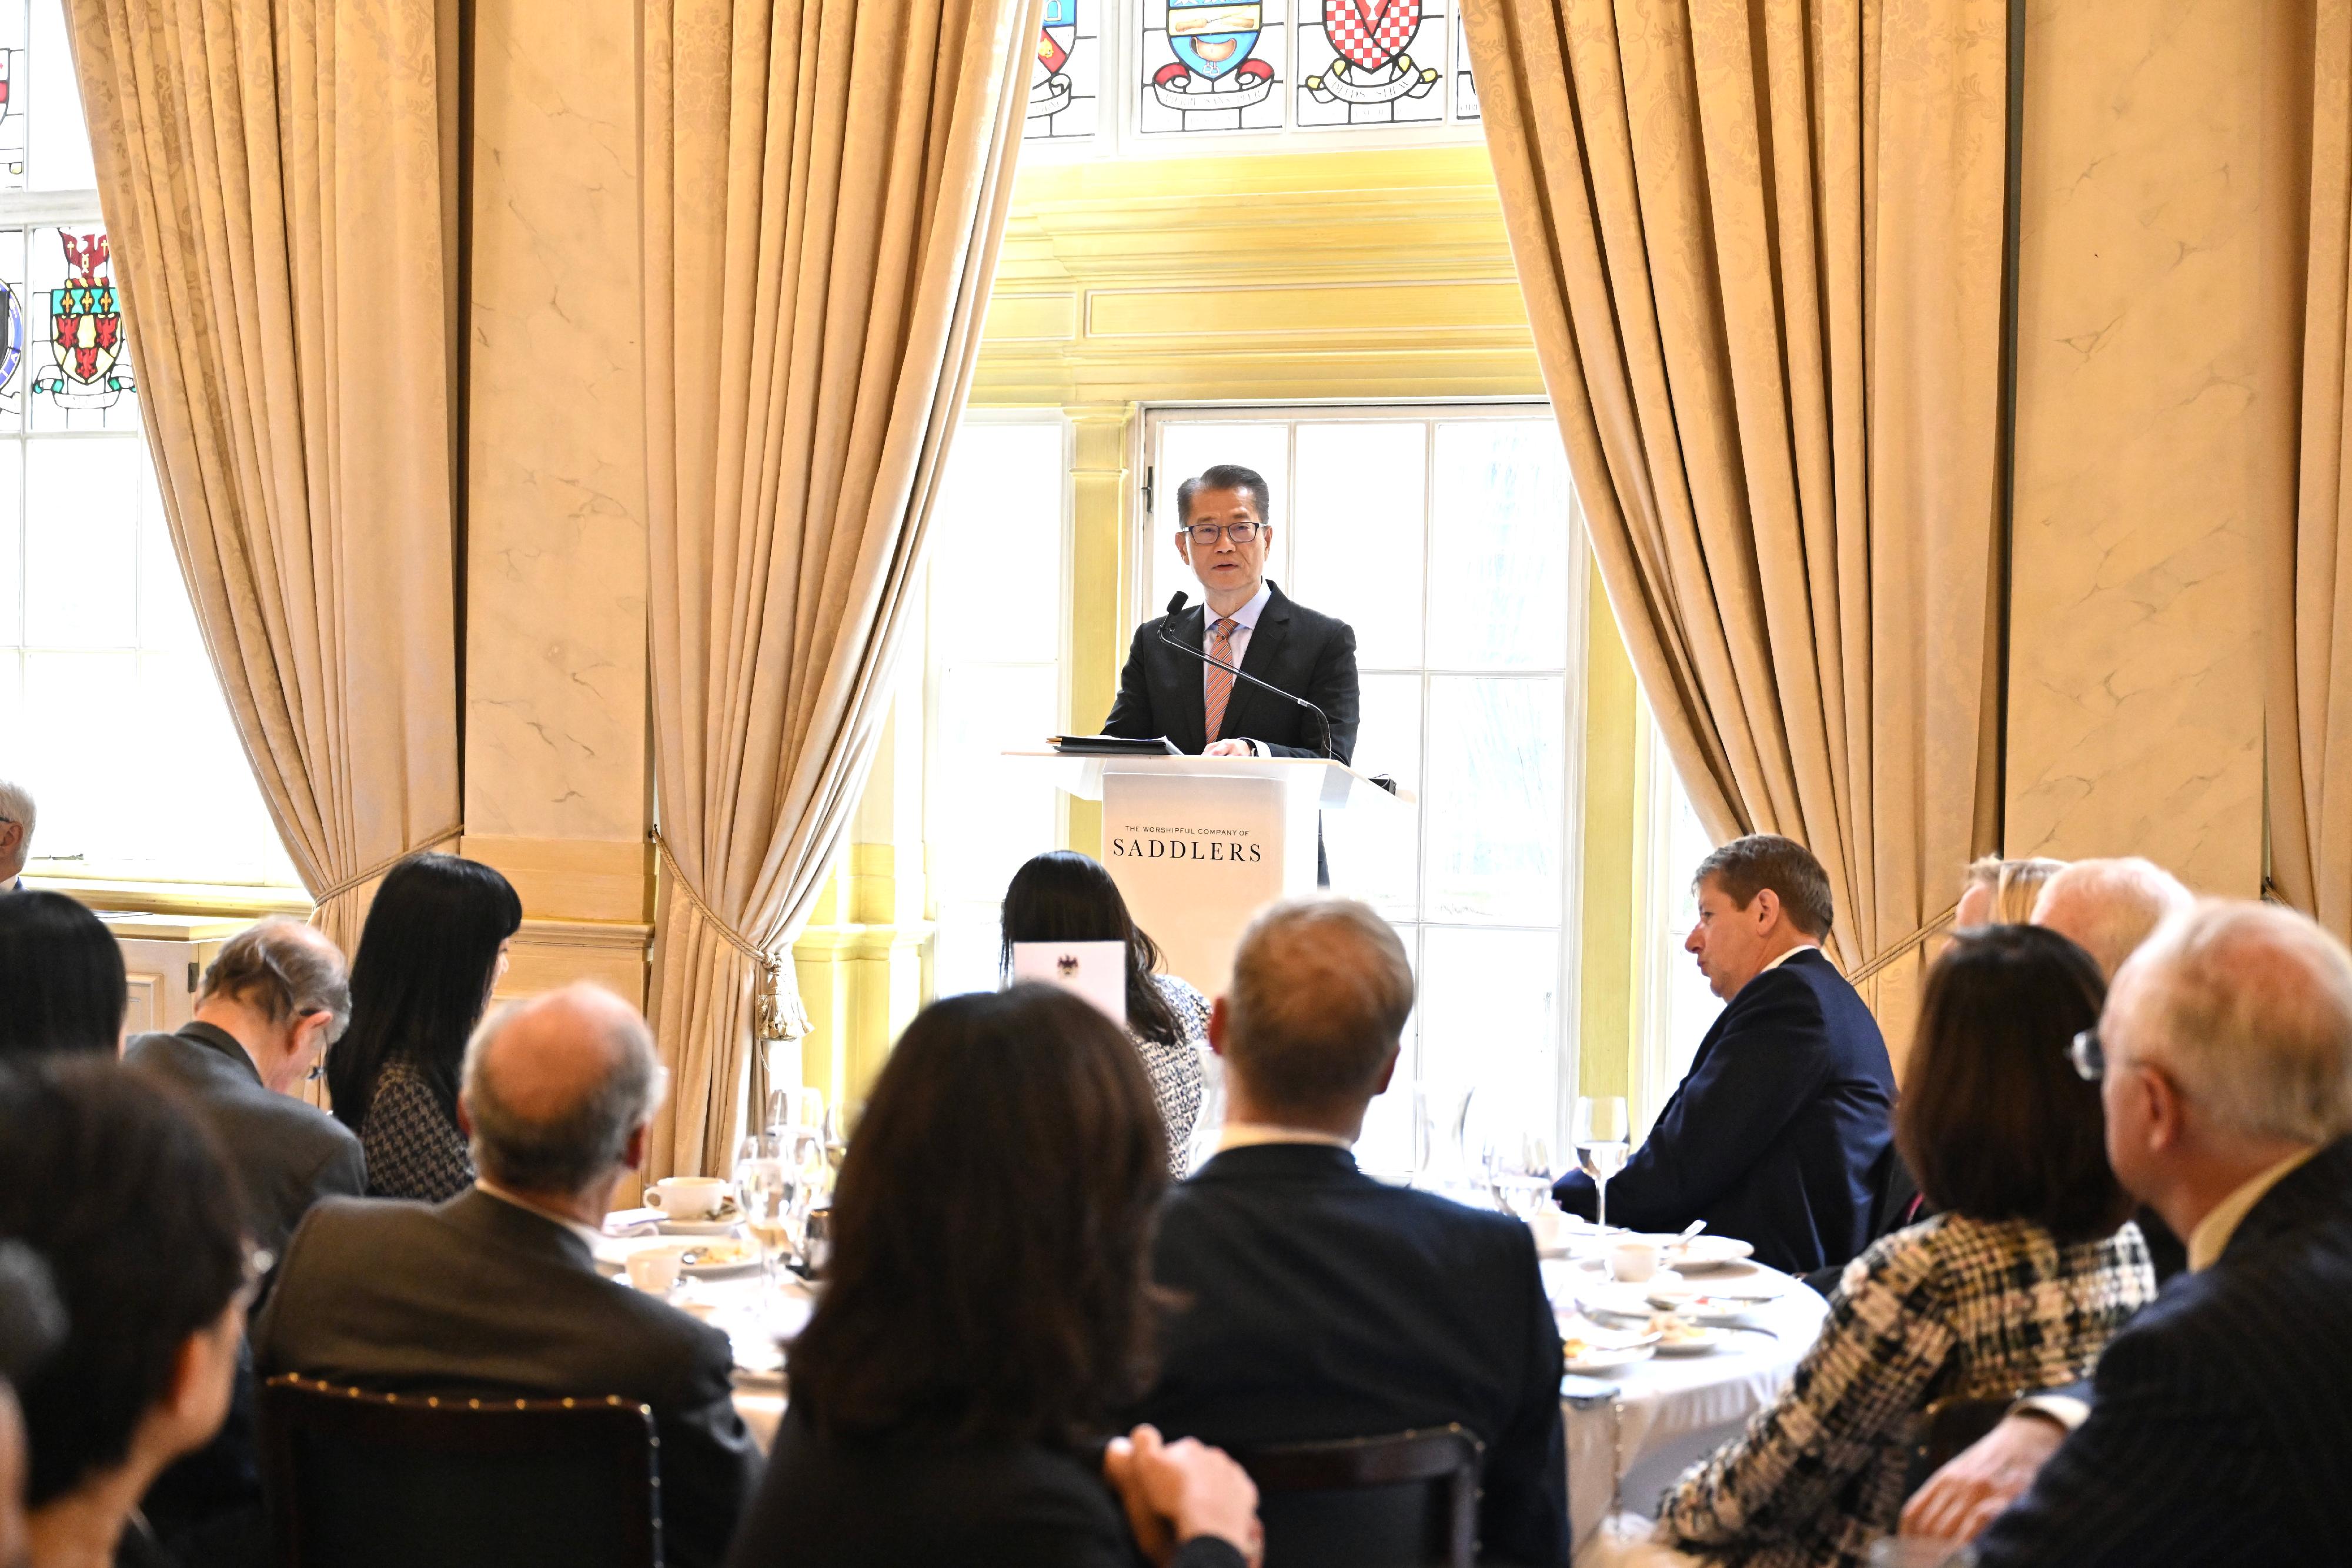 财政司司长陈茂波昨日（伦敦时间九月二十一日）继续伦敦访问行程。图示陈茂波在香港工商协会的午餐会，向超过120名英国政商界嘉宾发表演说。
